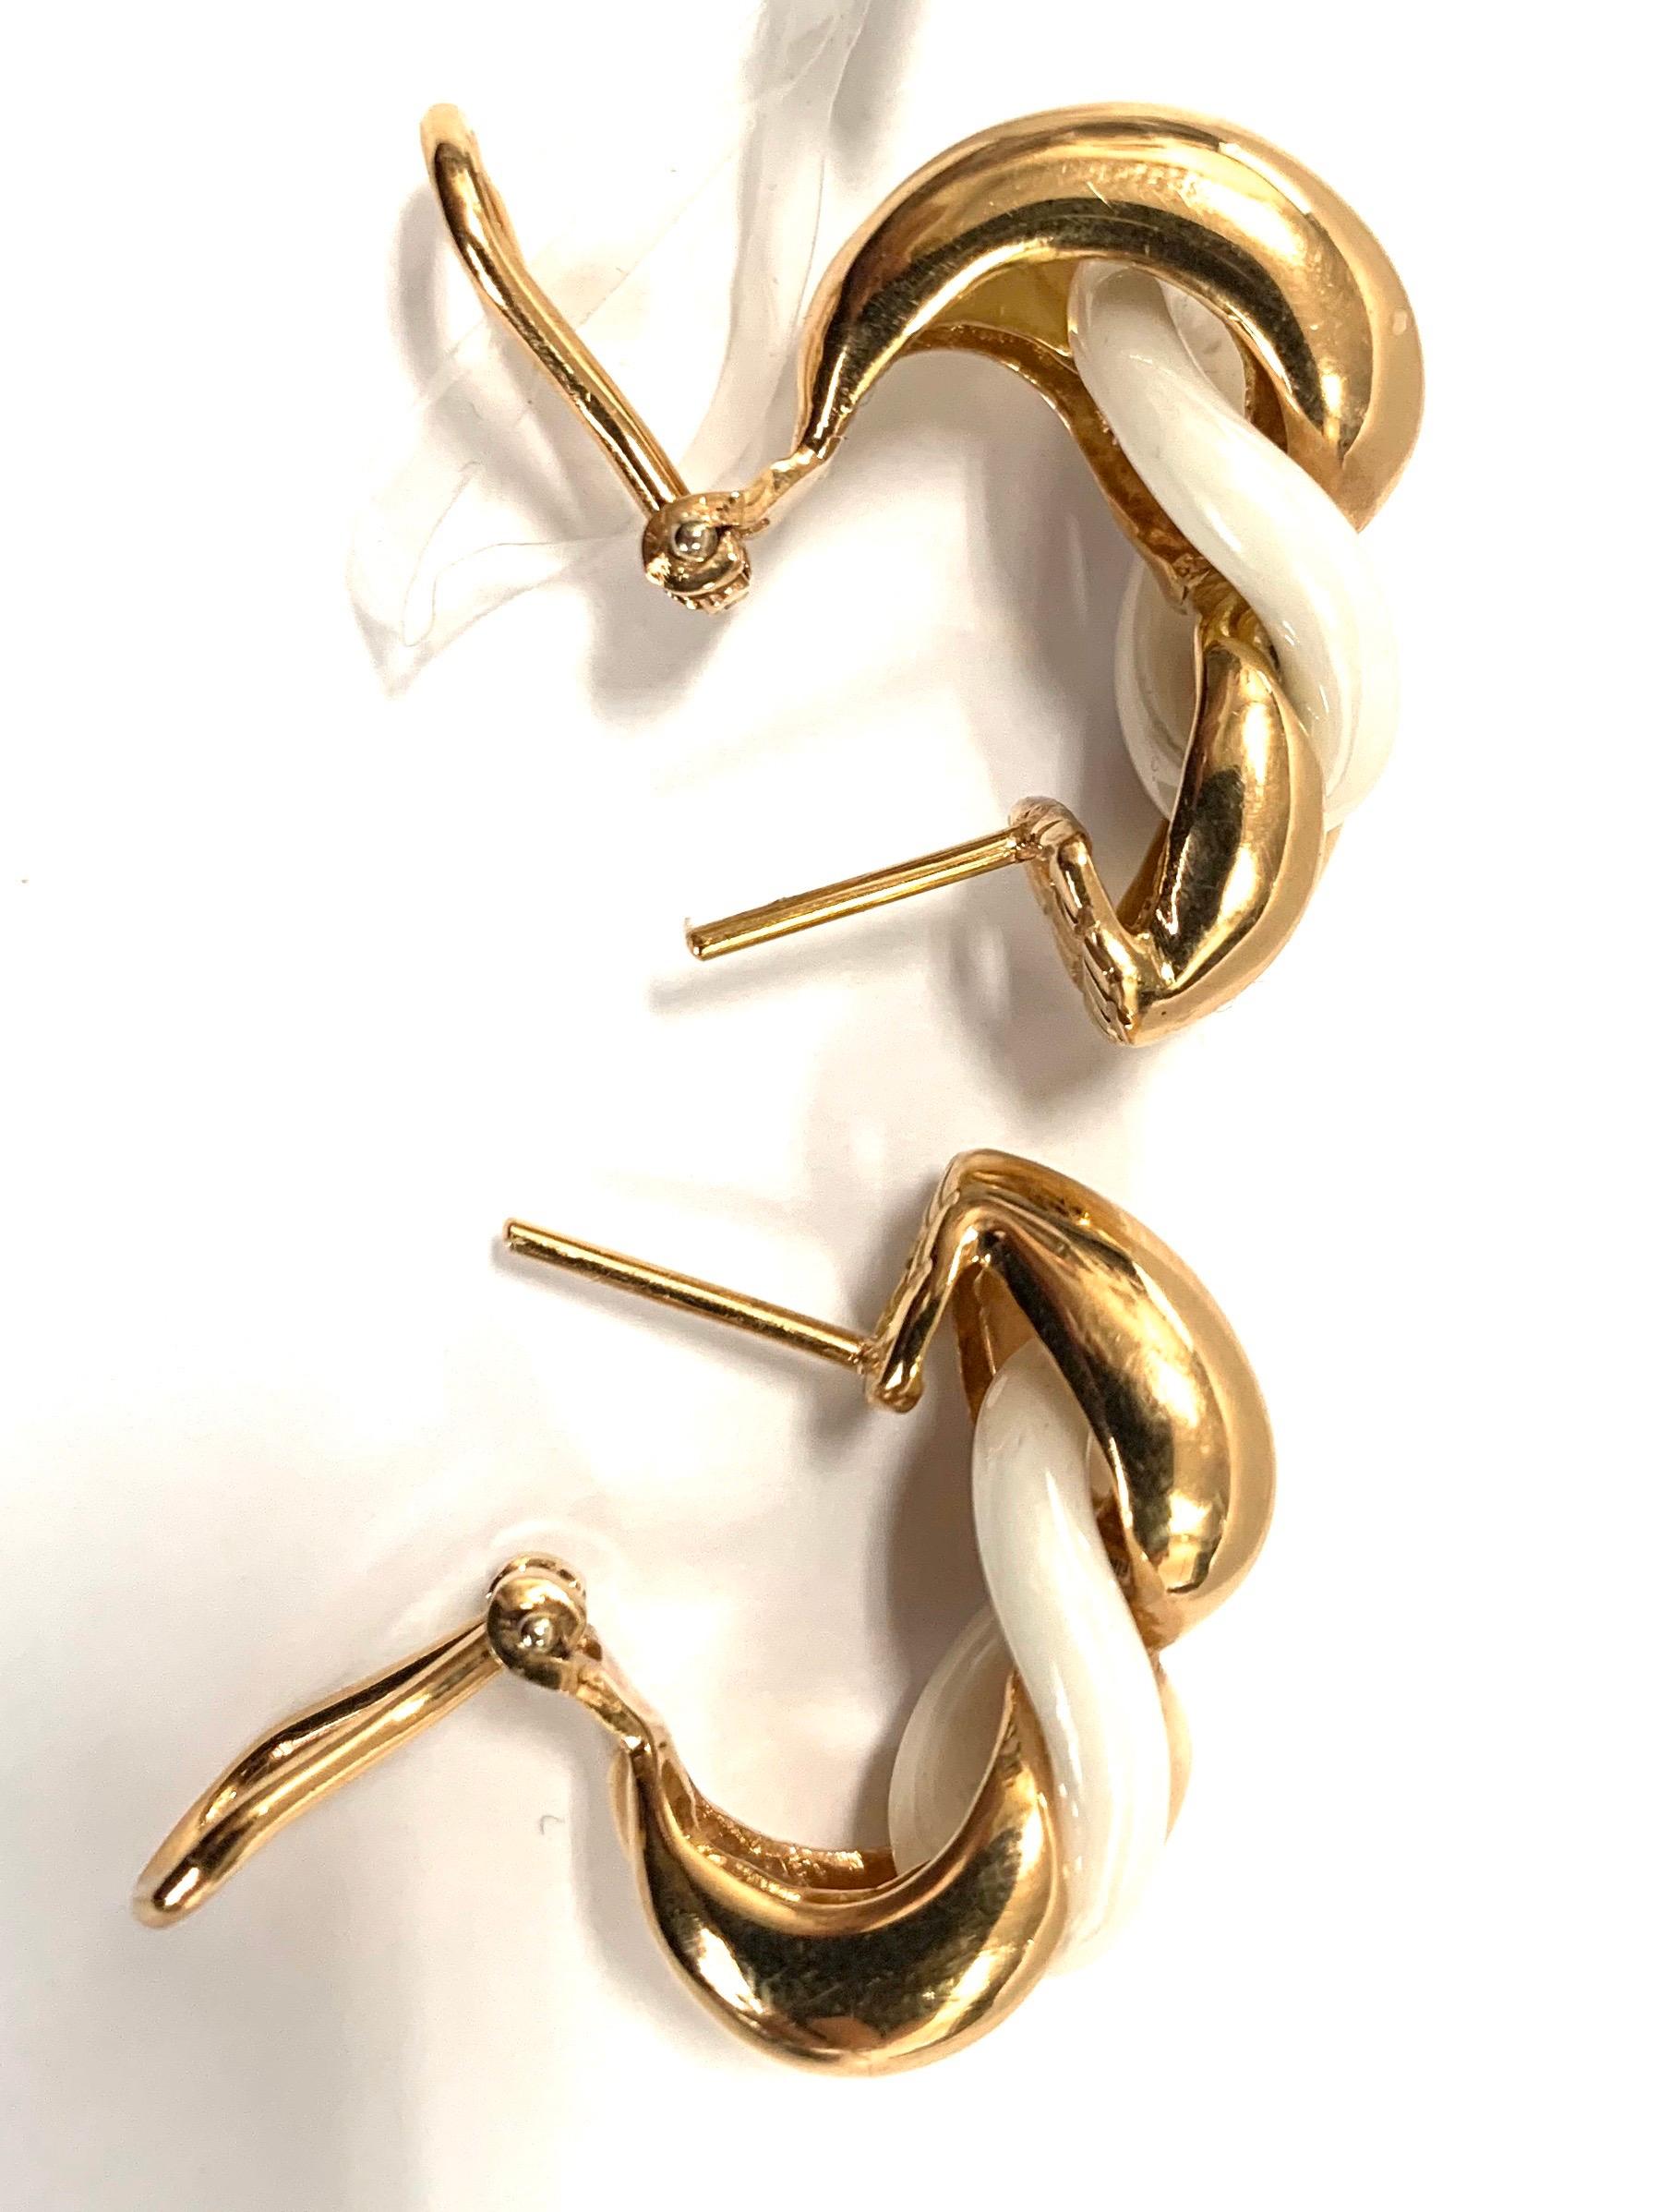 White Ceramic Groumette Pair of Earrings 18 Karat Rose Gold For Sale 2